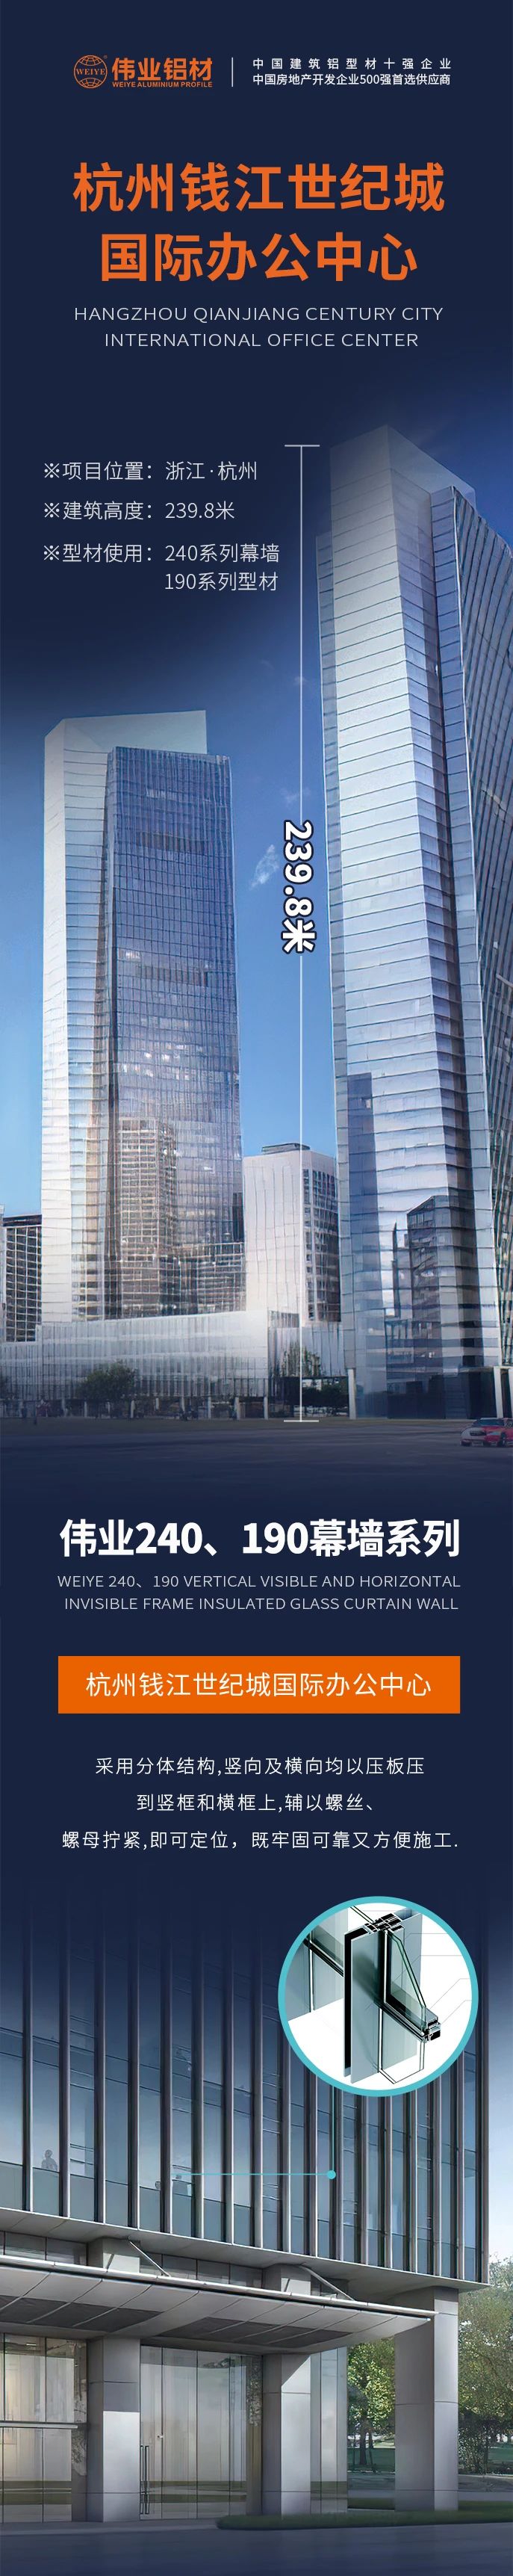 #伟业铝材超百米项目分享# 工程名字：杭州钱江世纪城国际办公中心 建筑高度：239.8米 伟业产品：240系列幕墙、190系列型材